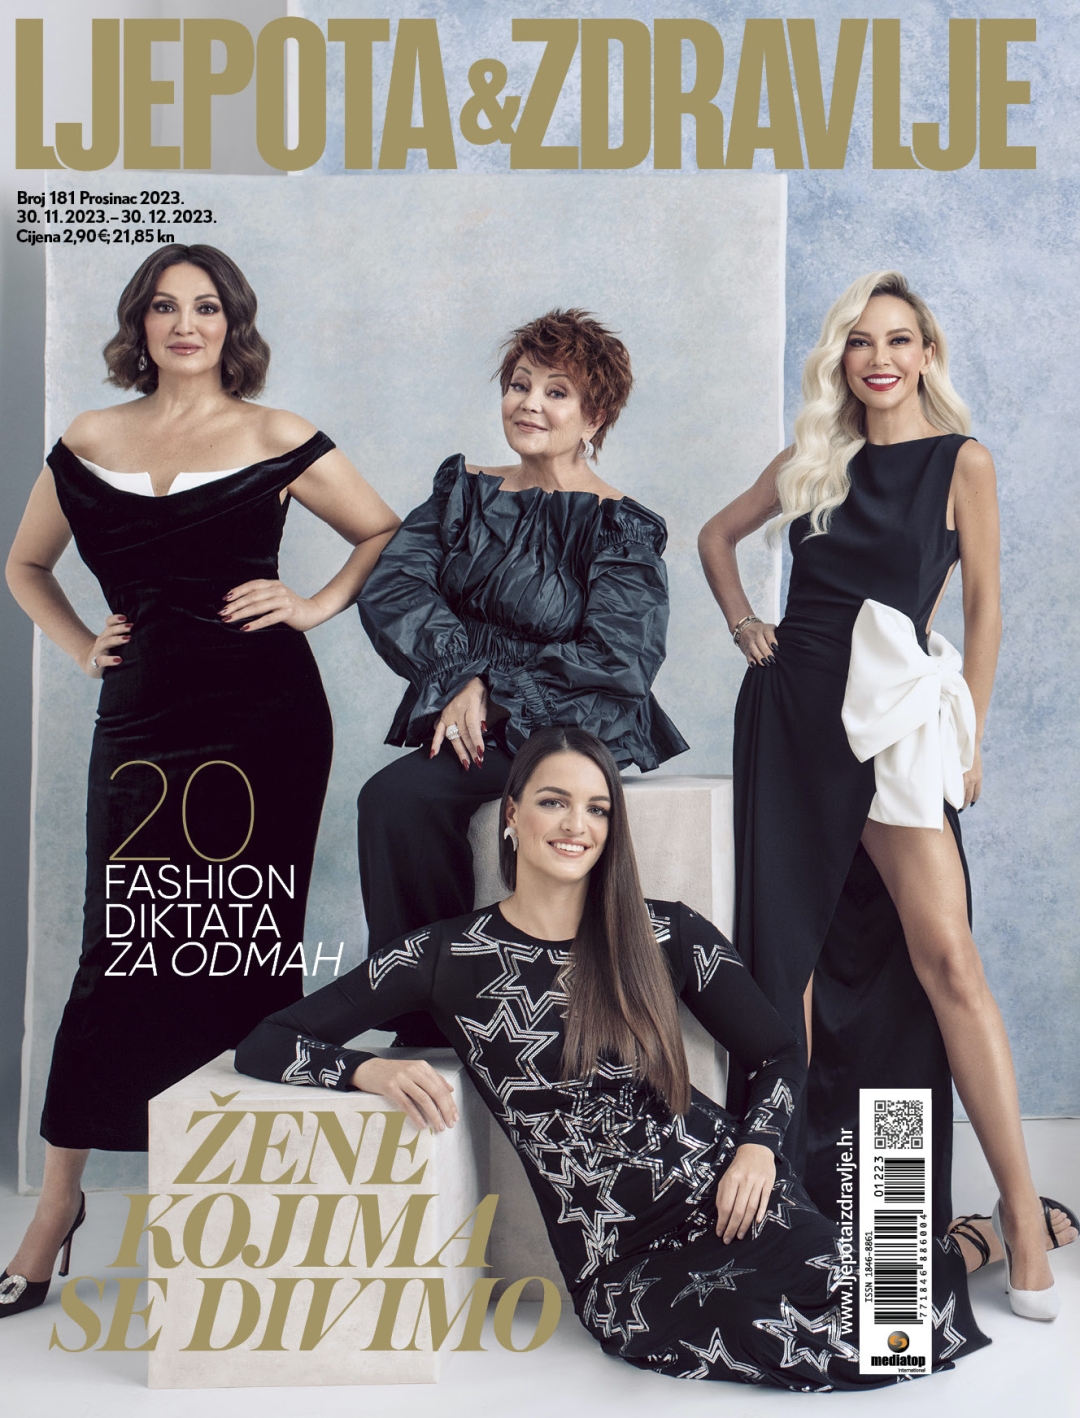 Osam inspirativnih žena krasi naslovnicu prosinačkog izdanja časopisa Ljepota&zdravlje 